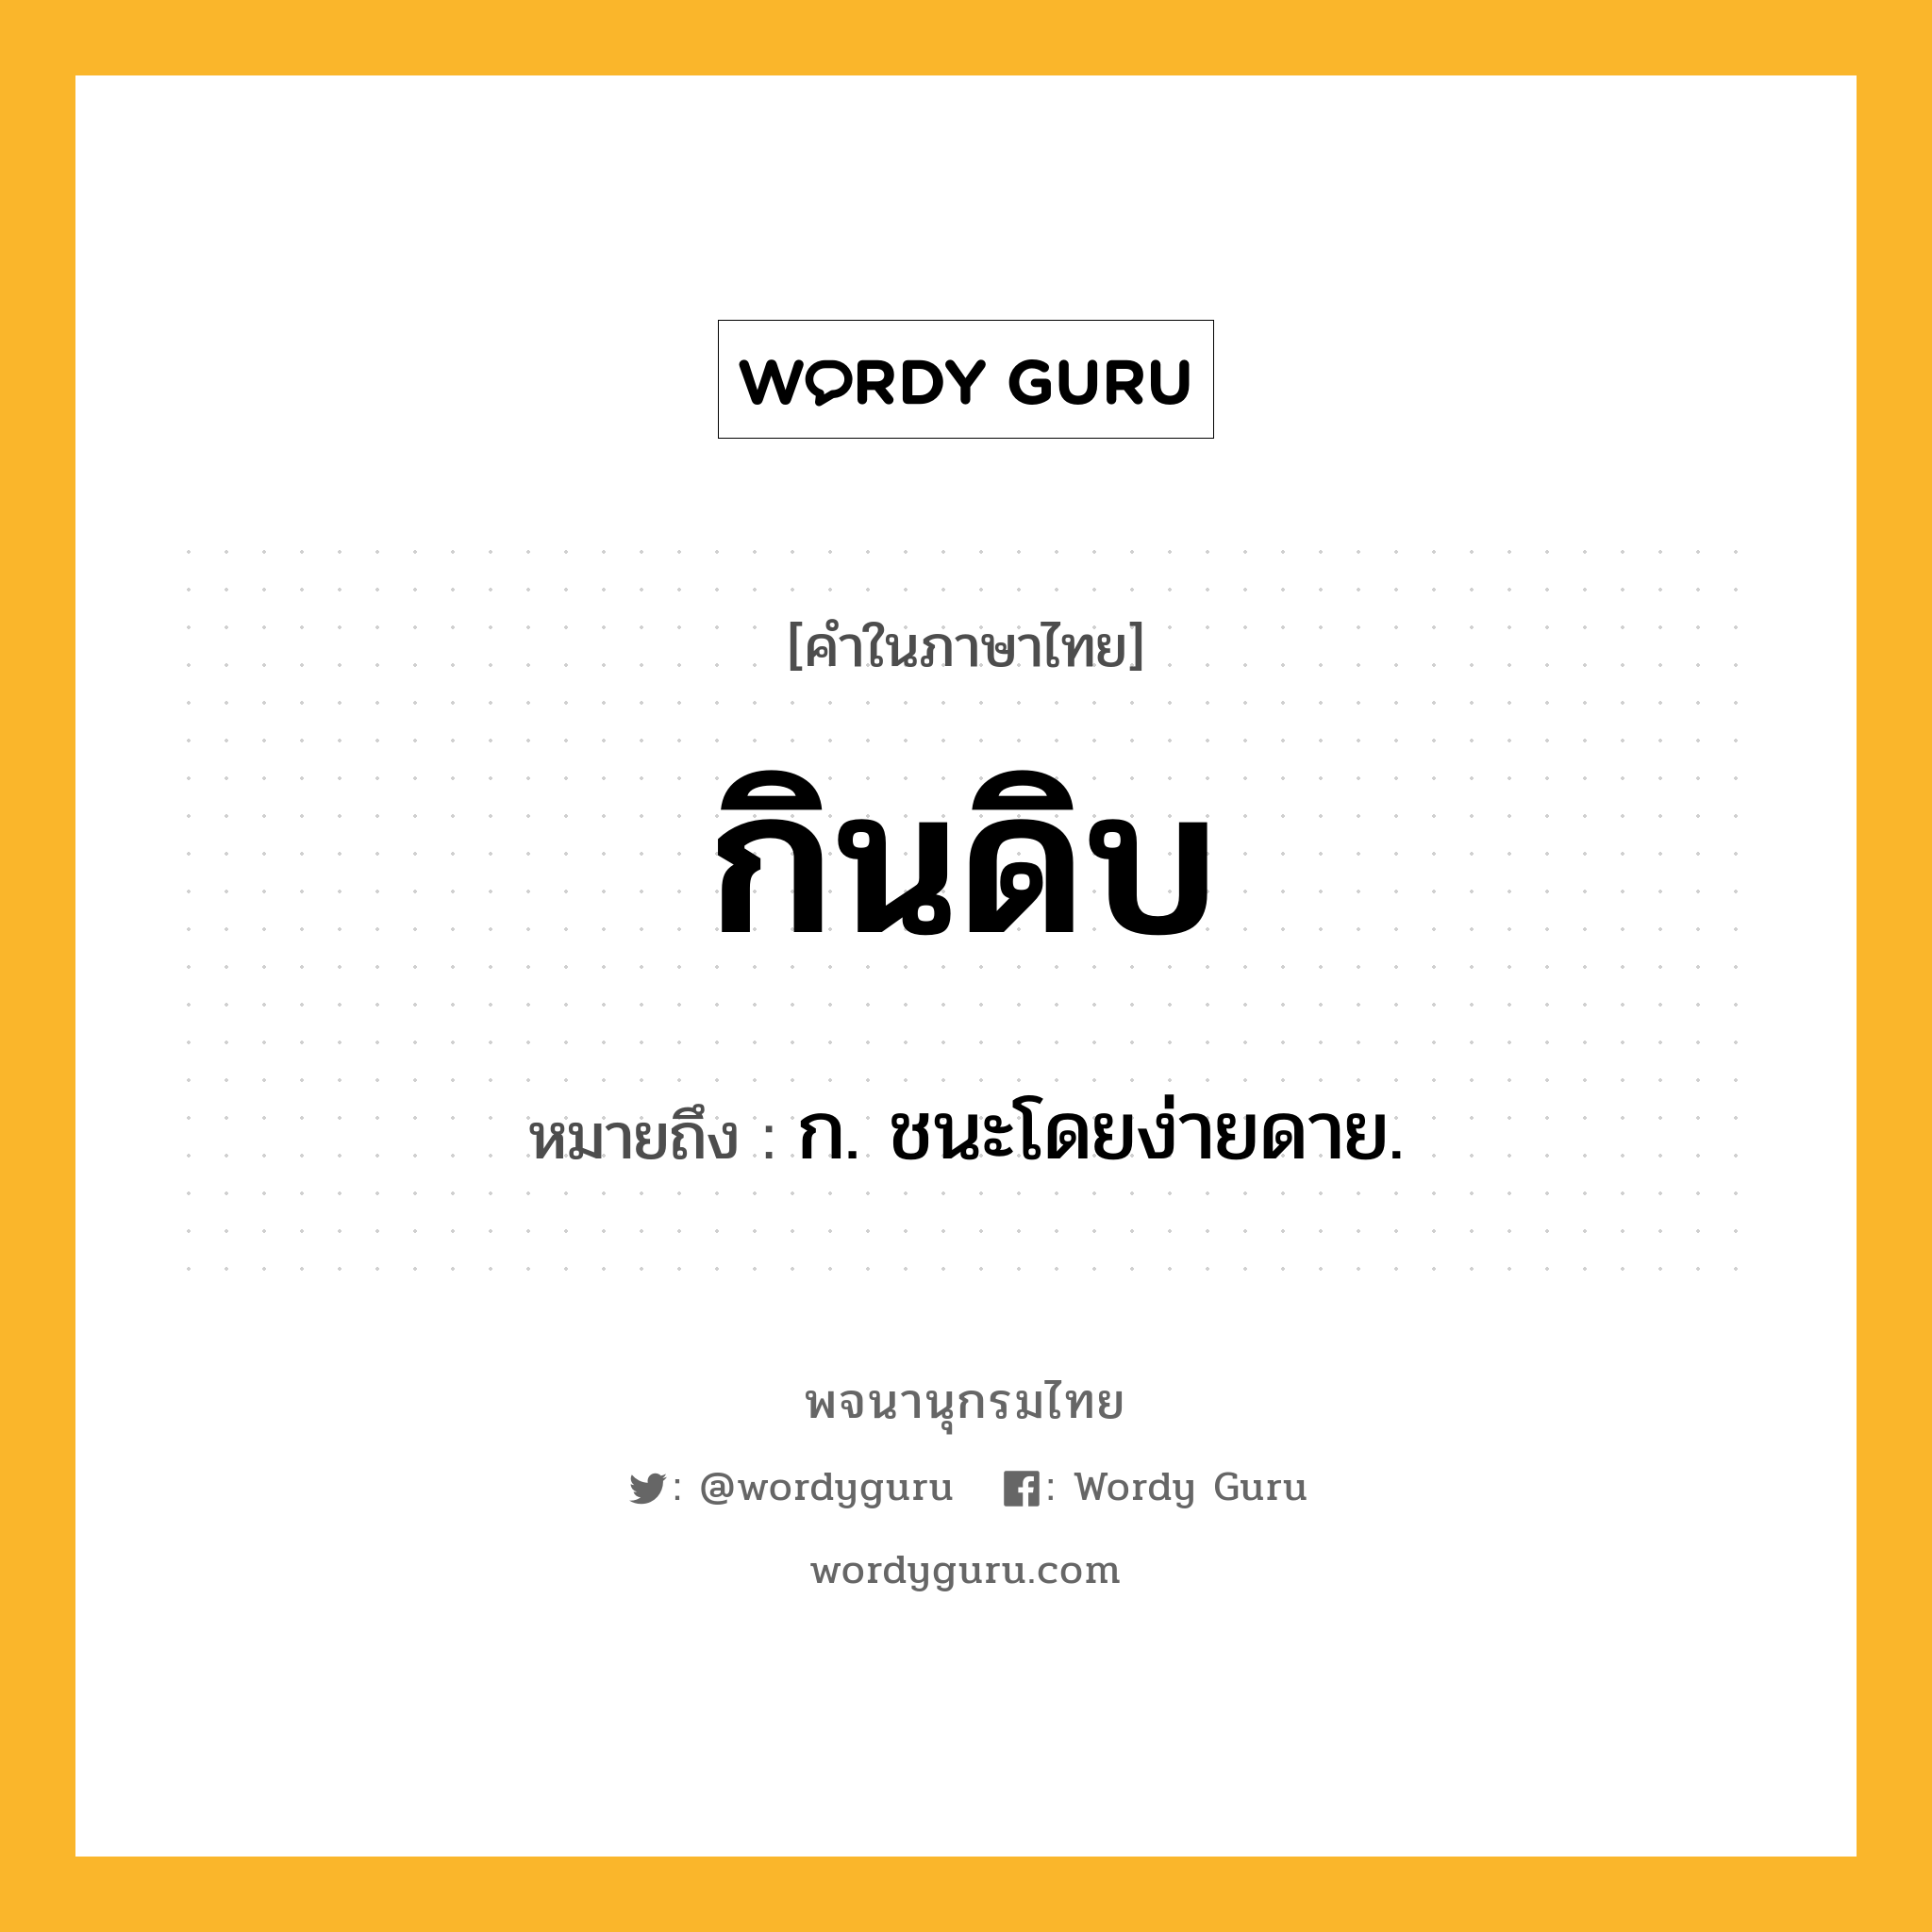 กินดิบ ความหมาย หมายถึงอะไร?, คำในภาษาไทย กินดิบ หมายถึง ก. ชนะโดยง่ายดาย.